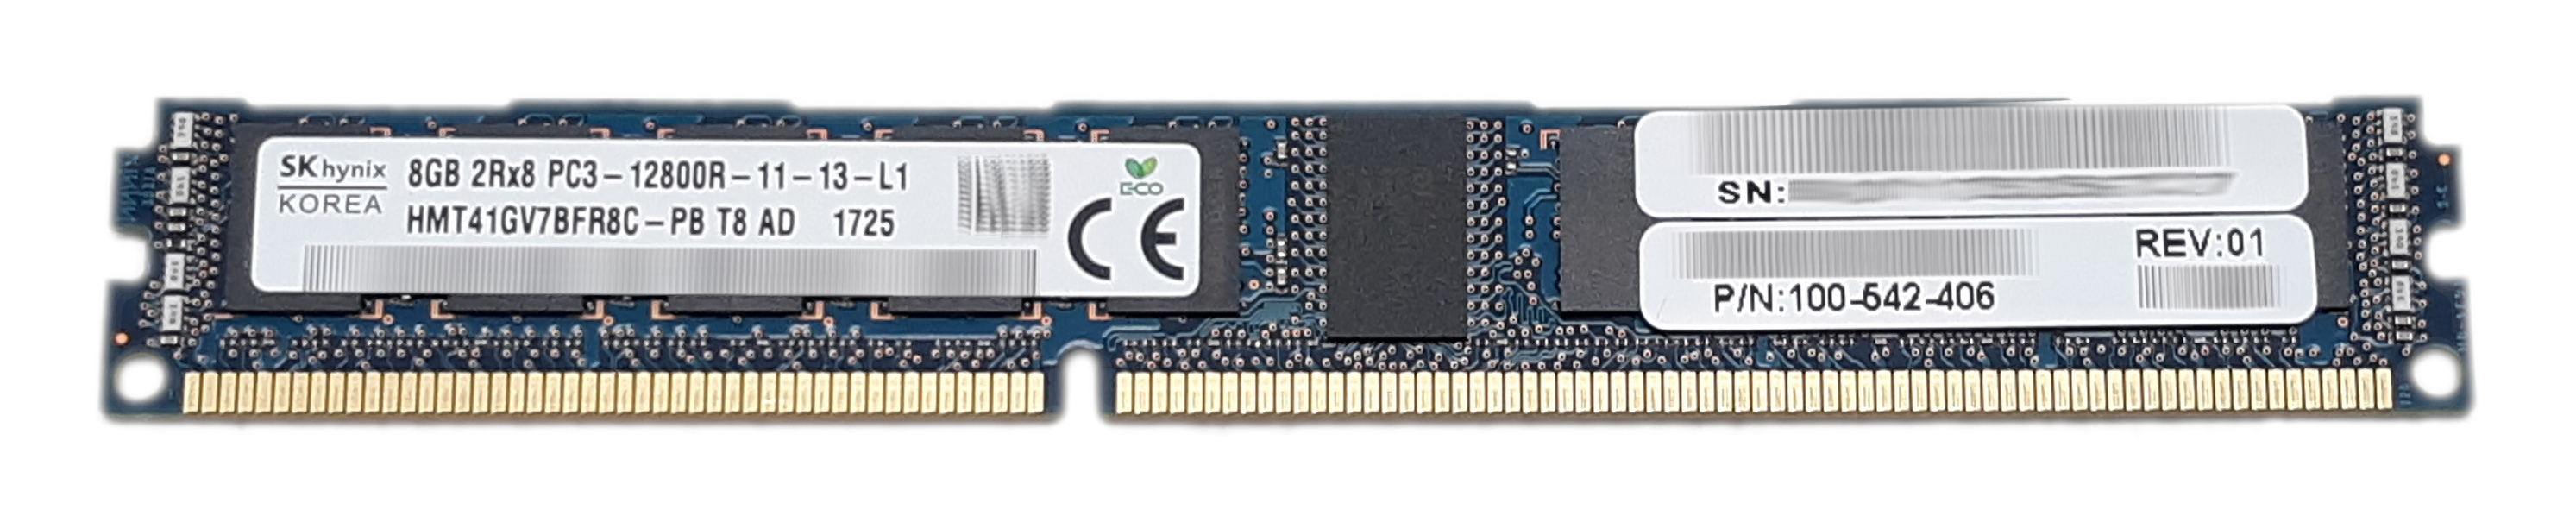 Hynix 8GB RAM HMT41GV7BFR8C-PB PC3-12800R DDR3 1600MHZ ECC Registered 100-542-406